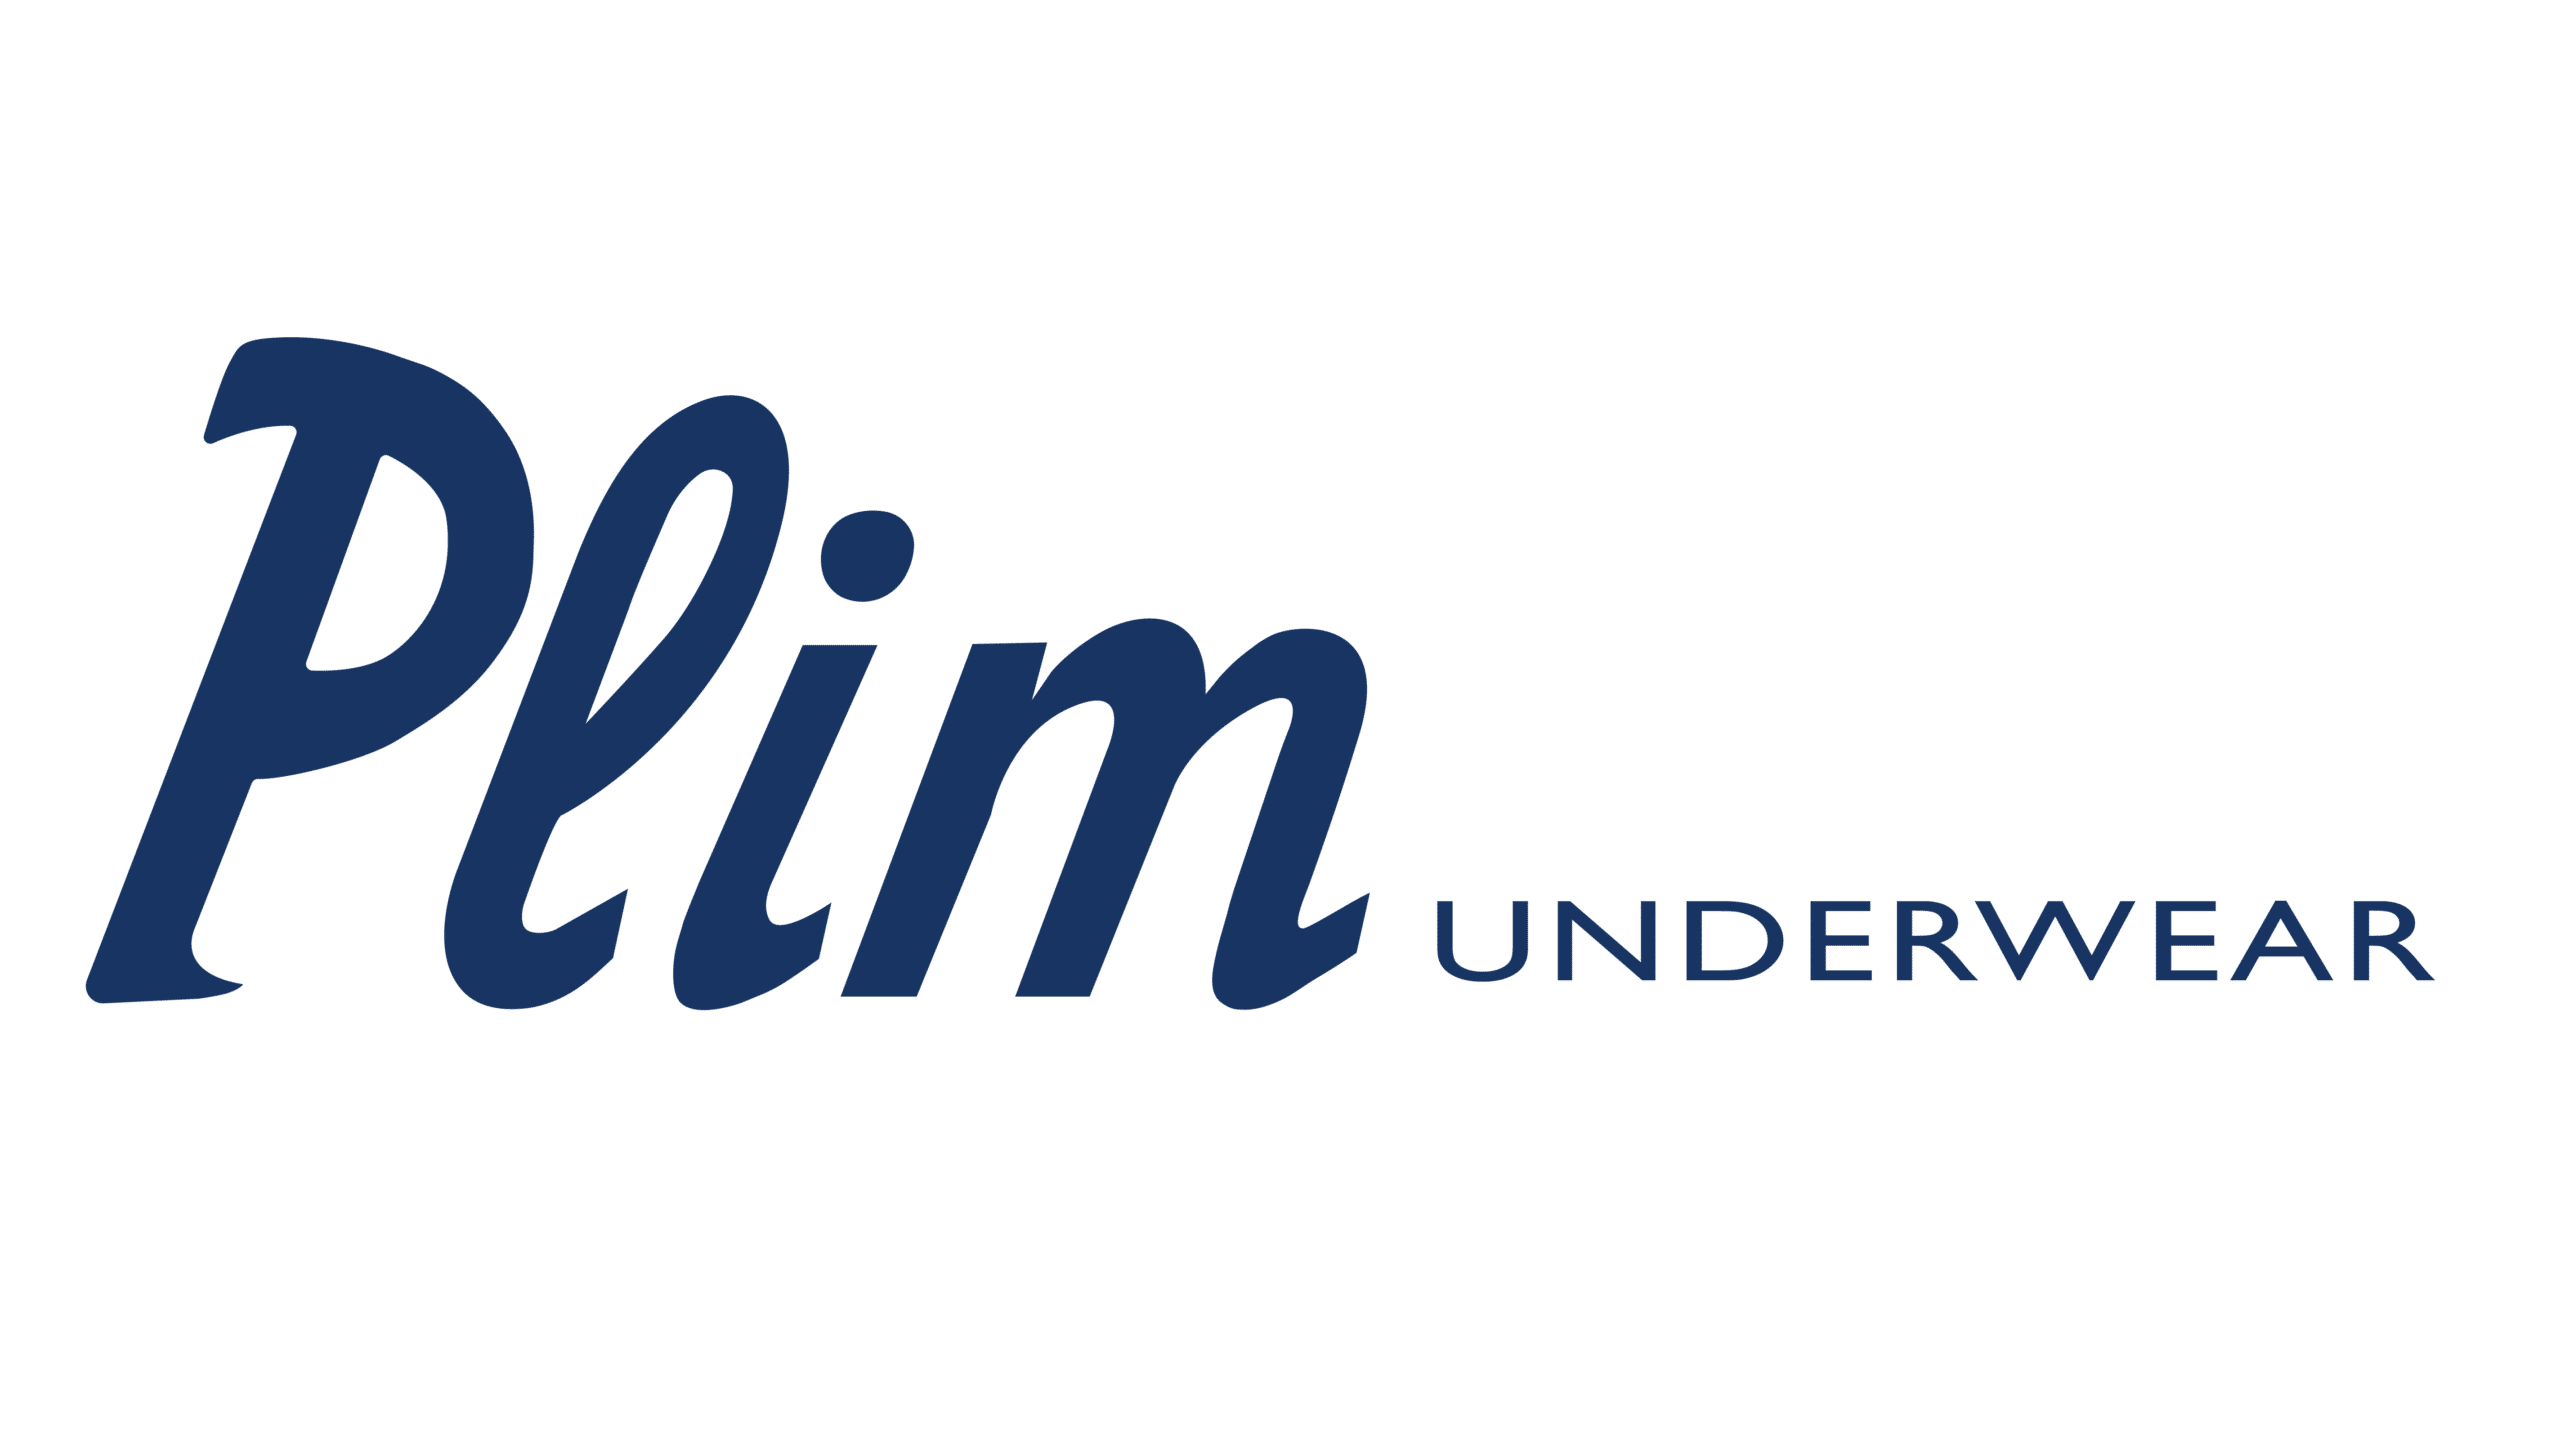 Plim Underwear